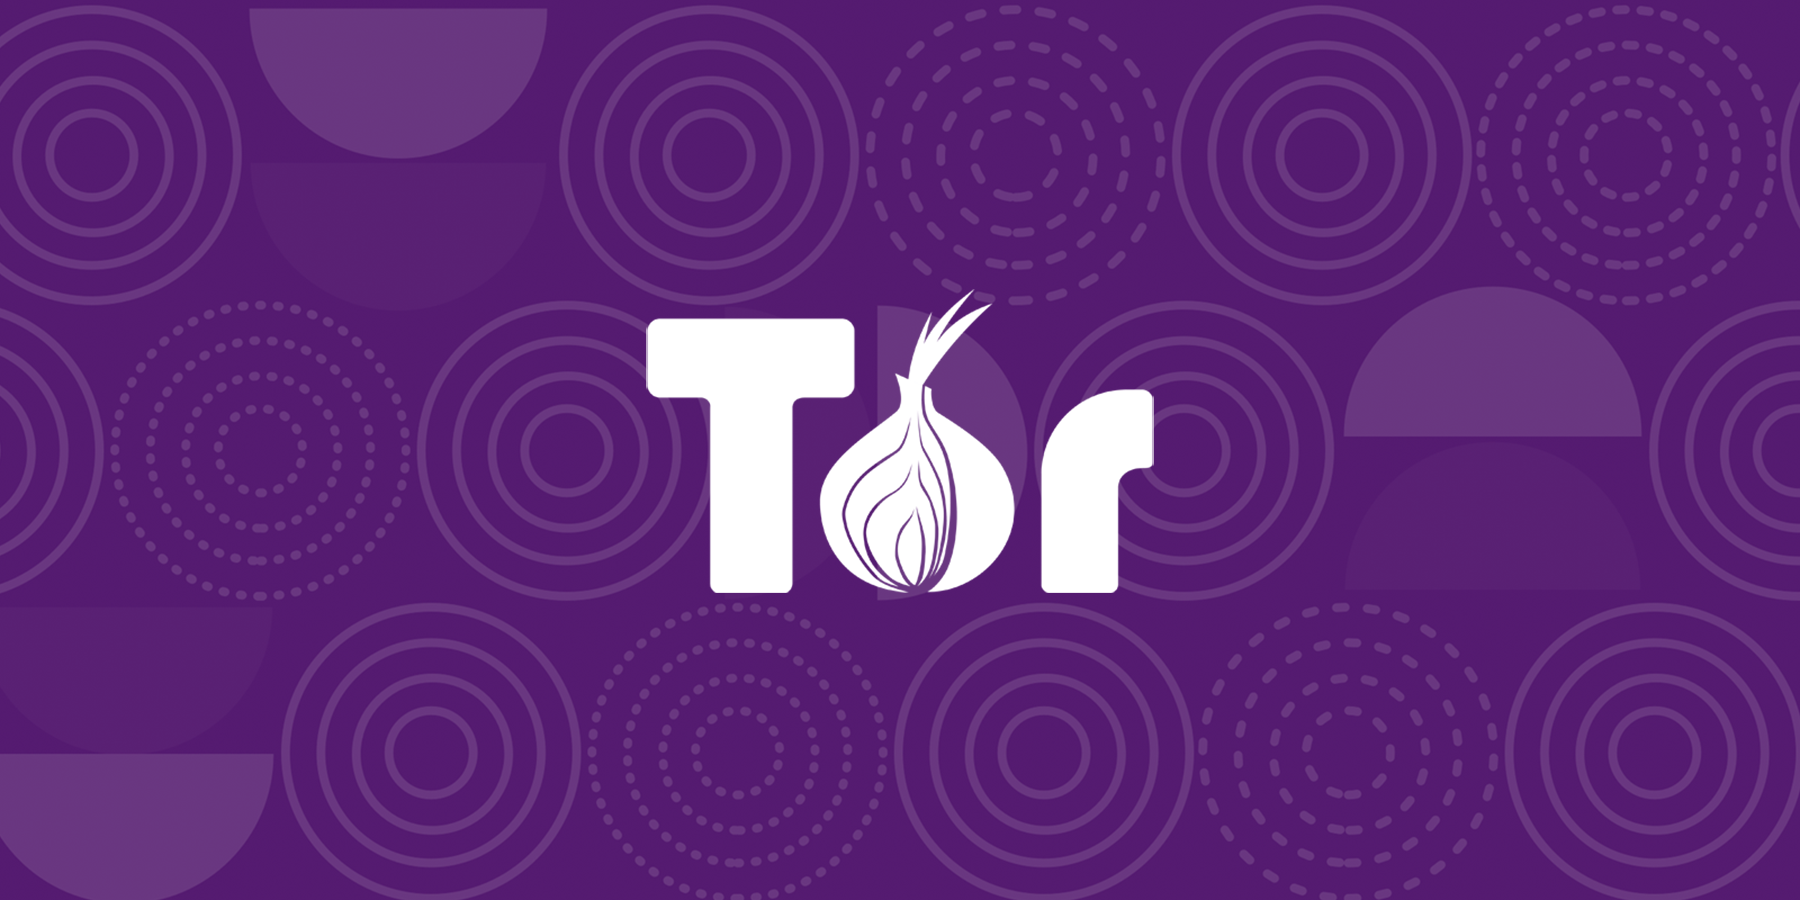 Tor browser and onion sites hydra2web браузер тор андроид 4pda гирда